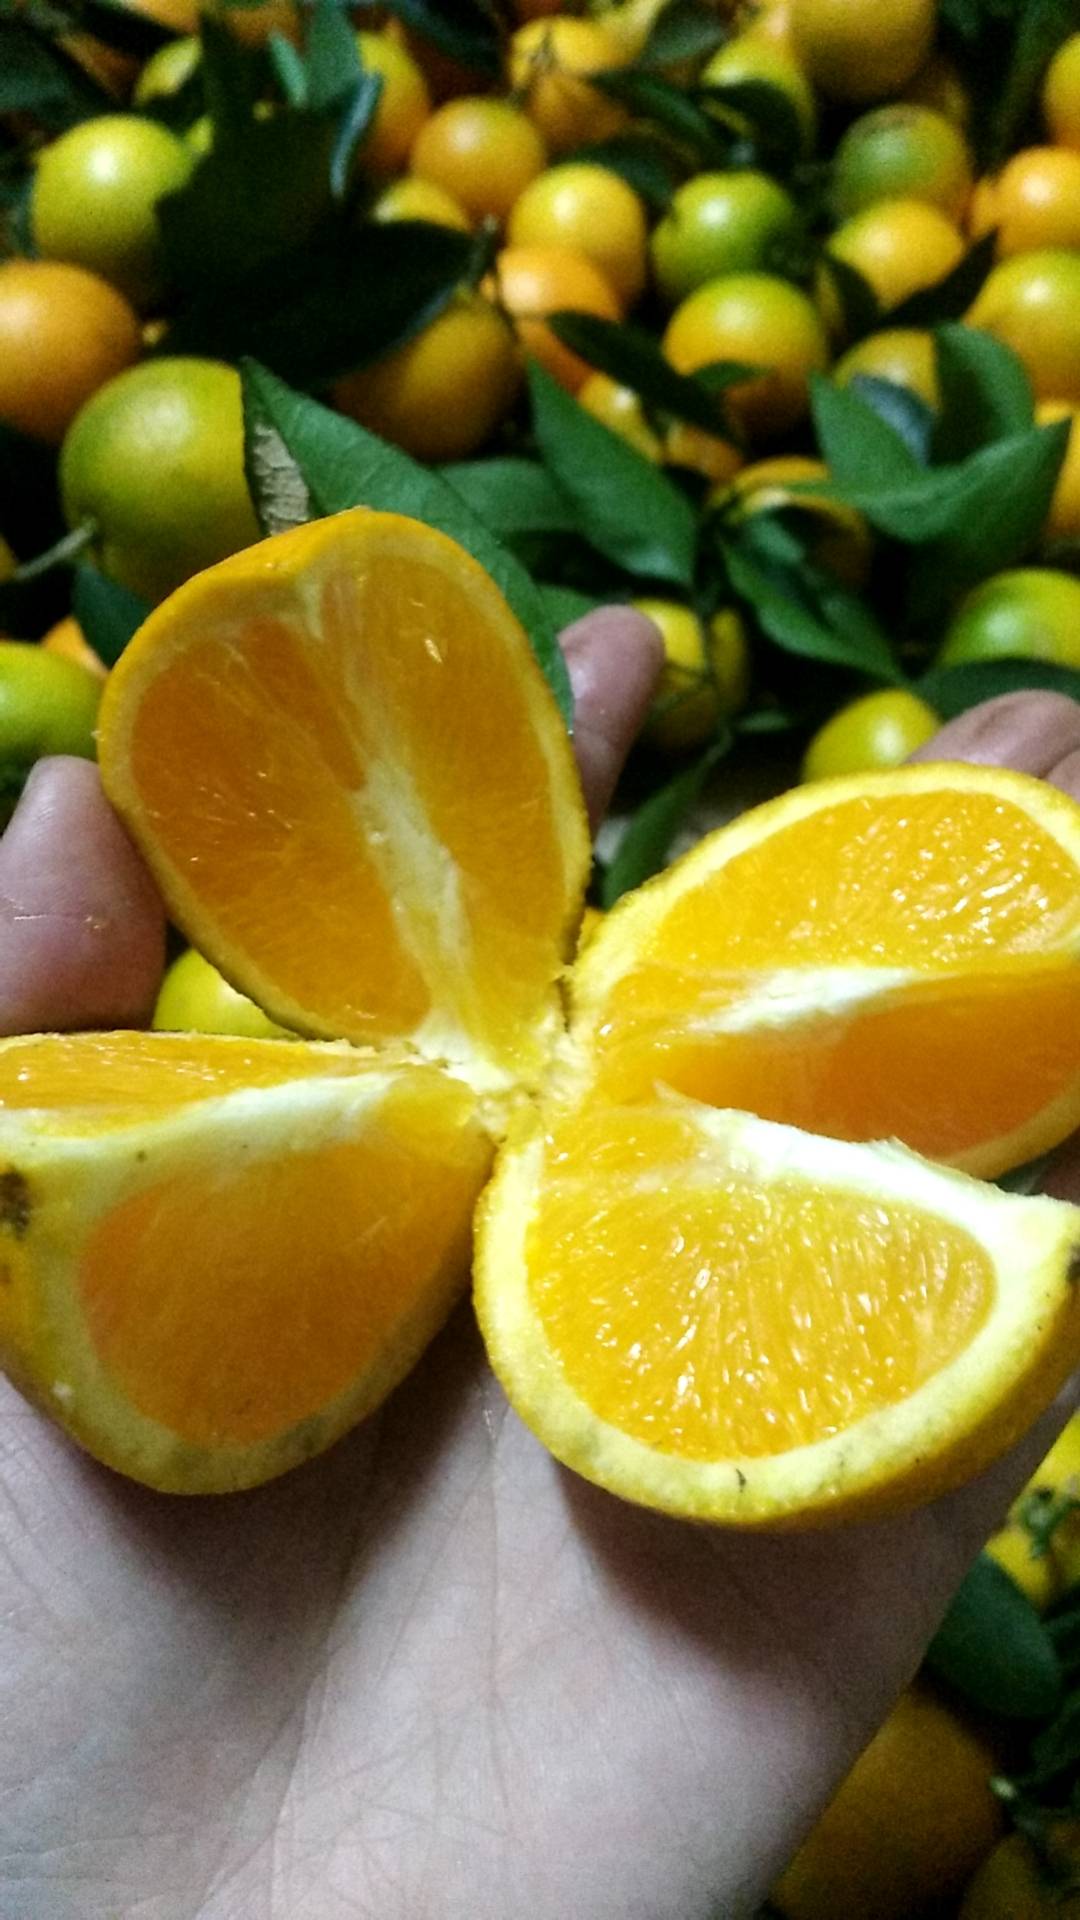 嘿还记得去年冬季火爆的冰糖橙吗？
来自世界和平城市-湖南省芷江侗族自治县的高山冰糖橙今年预售开始了
“橙 招代理”， 产地新鲜采摘，现摘现发！欢迎微商大咖，